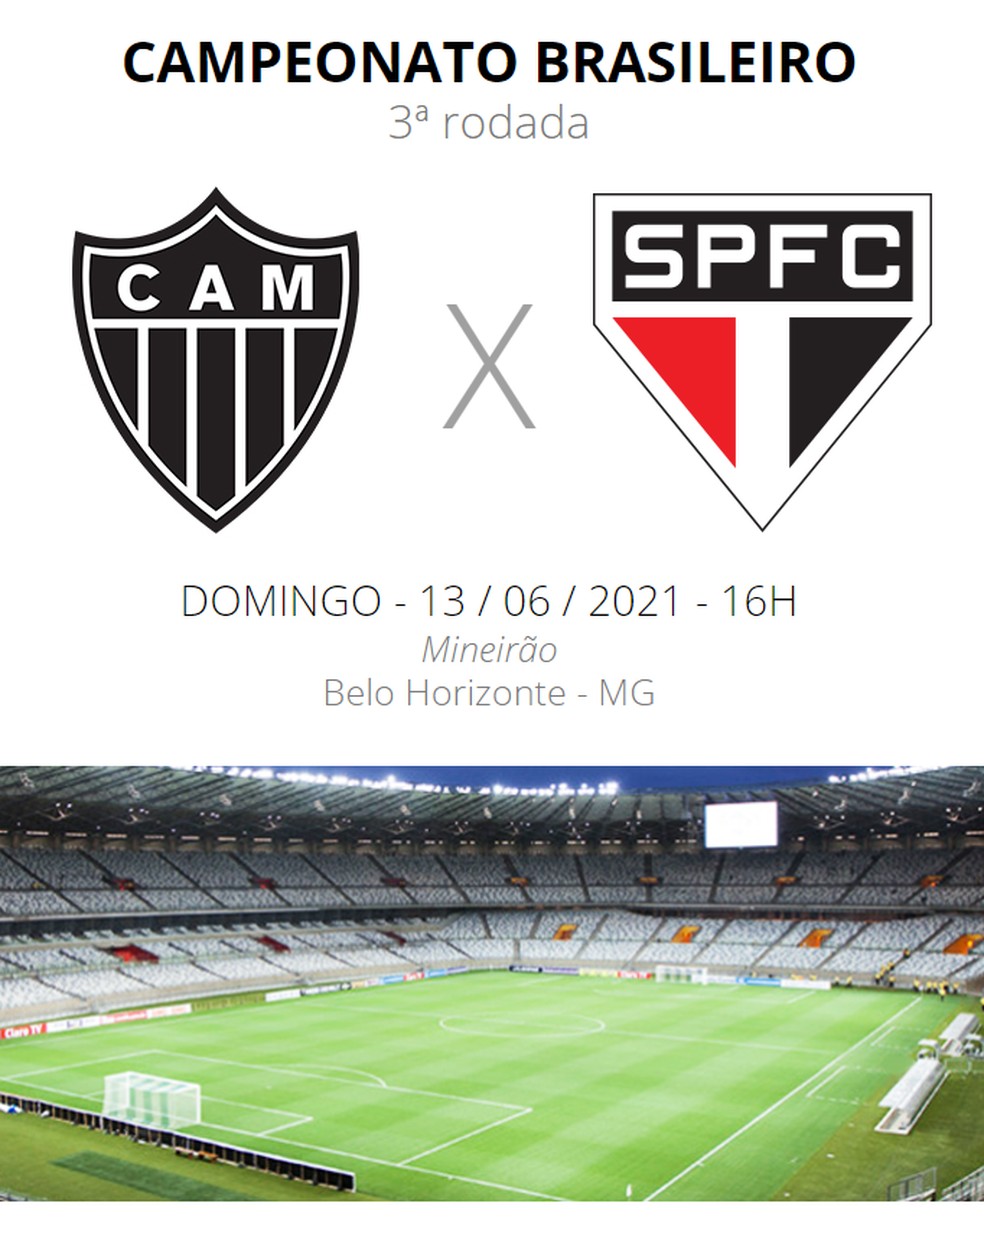 Atlético-MG x São Paulo ao vivo: como assistir online e